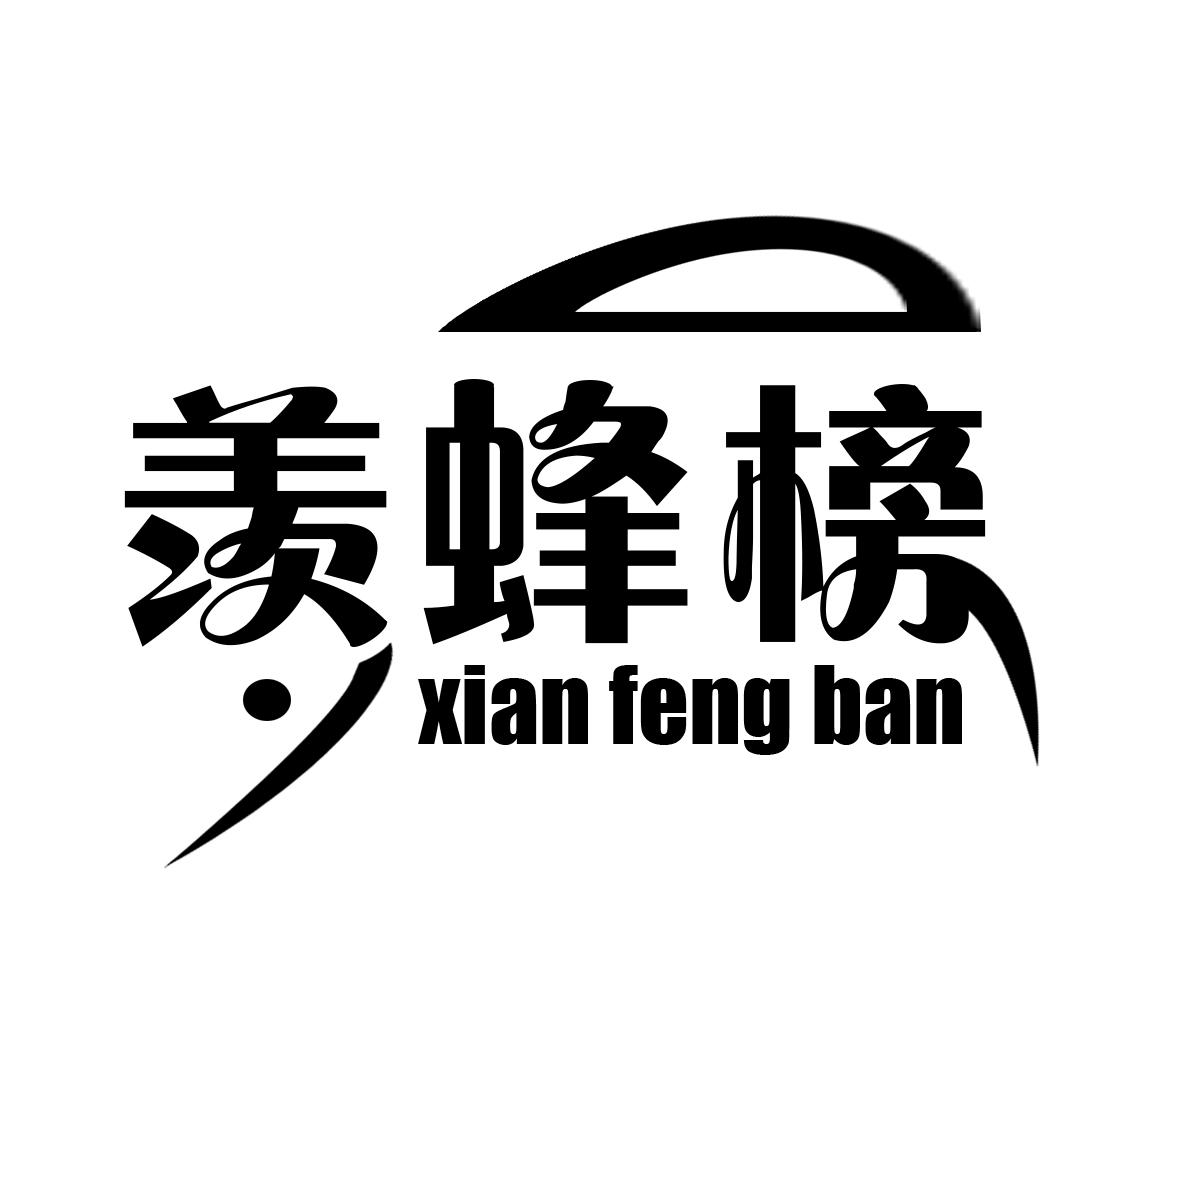 ۷ XIAN FENG BAN